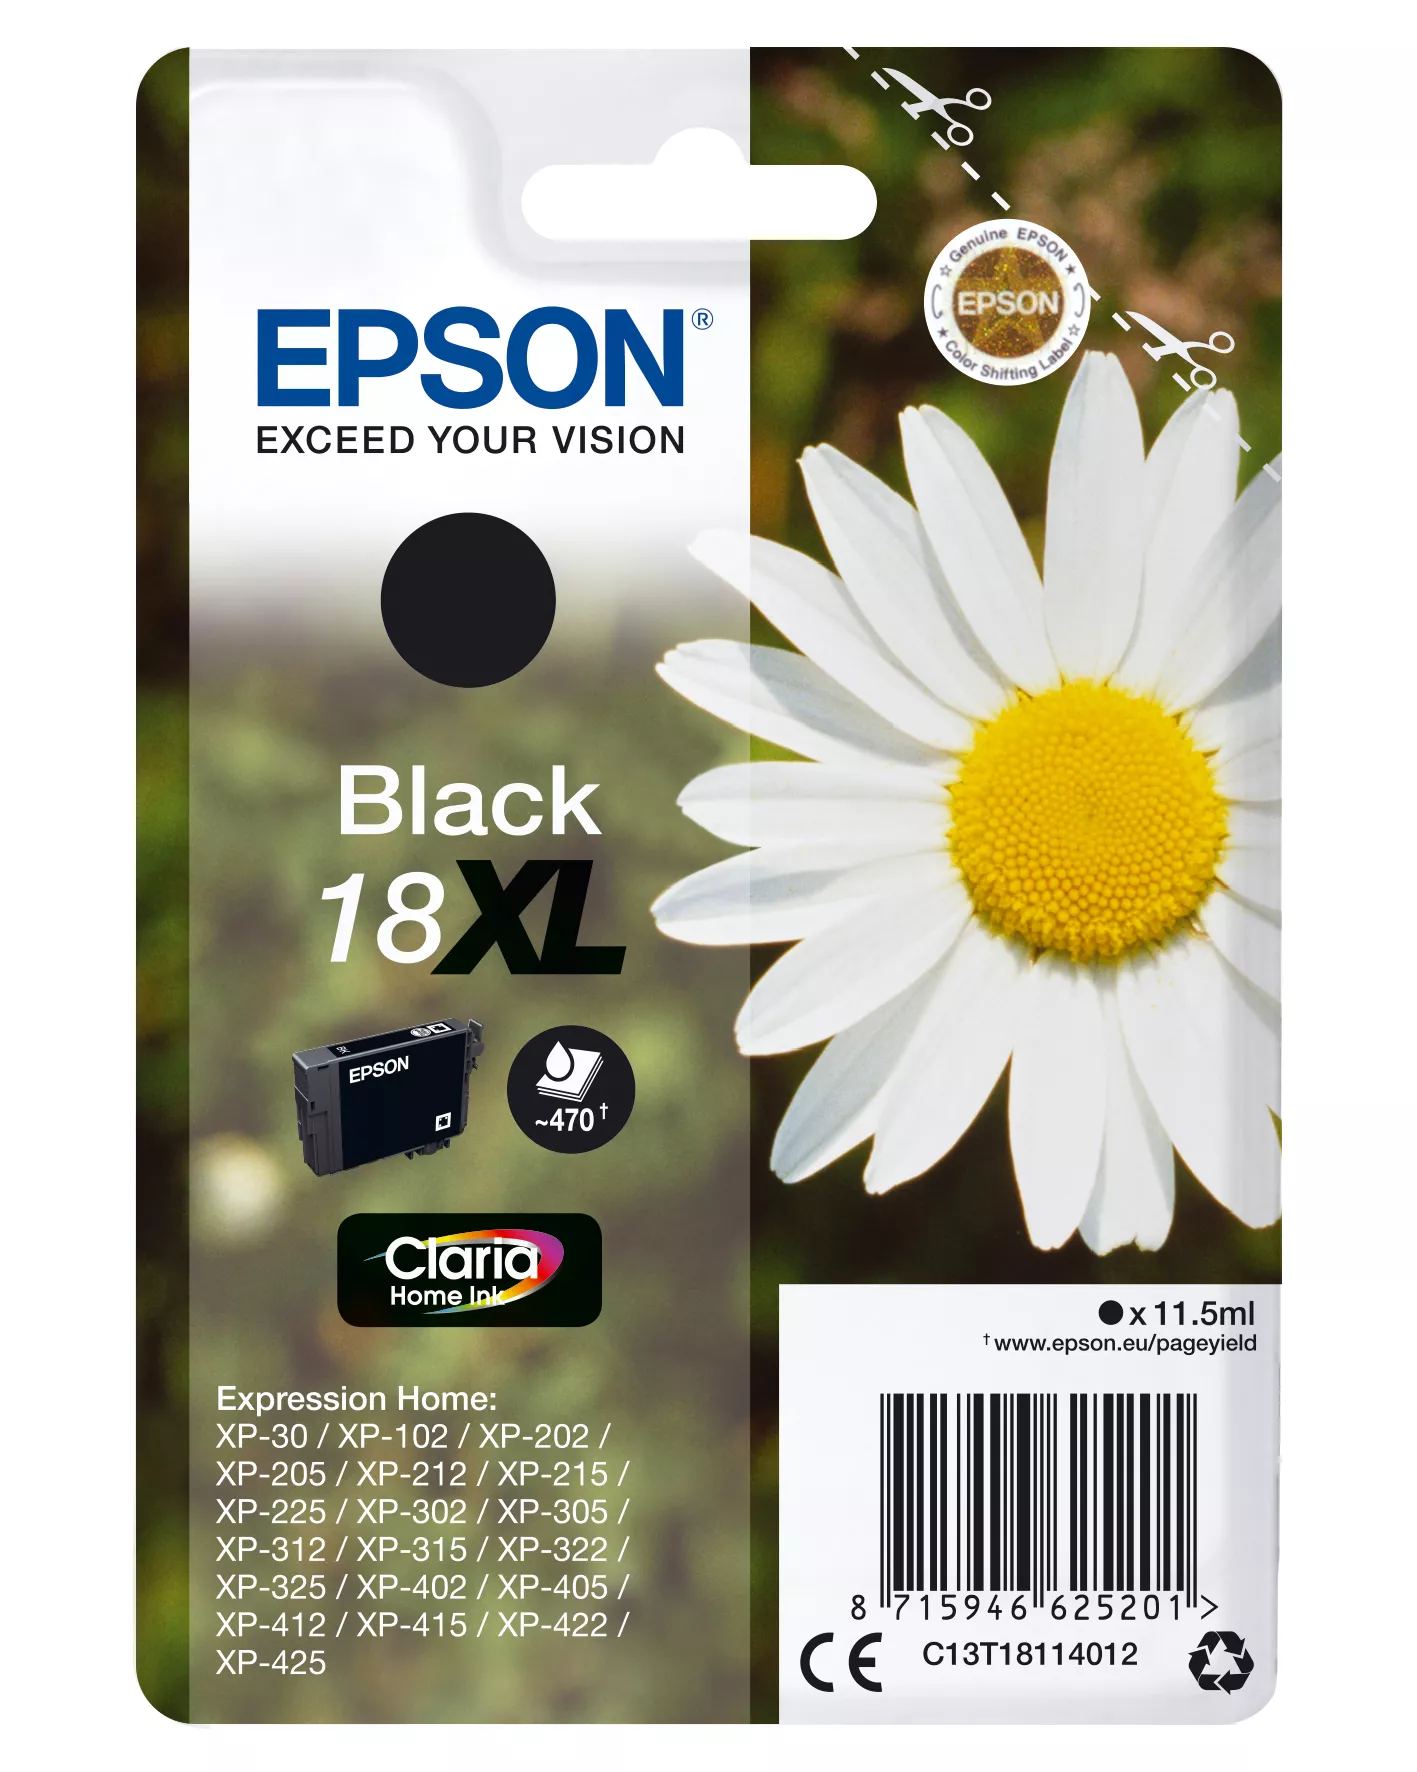 Vente EPSON 18XL cartouche d encre noir haute capacité 11.5ml au meilleur prix